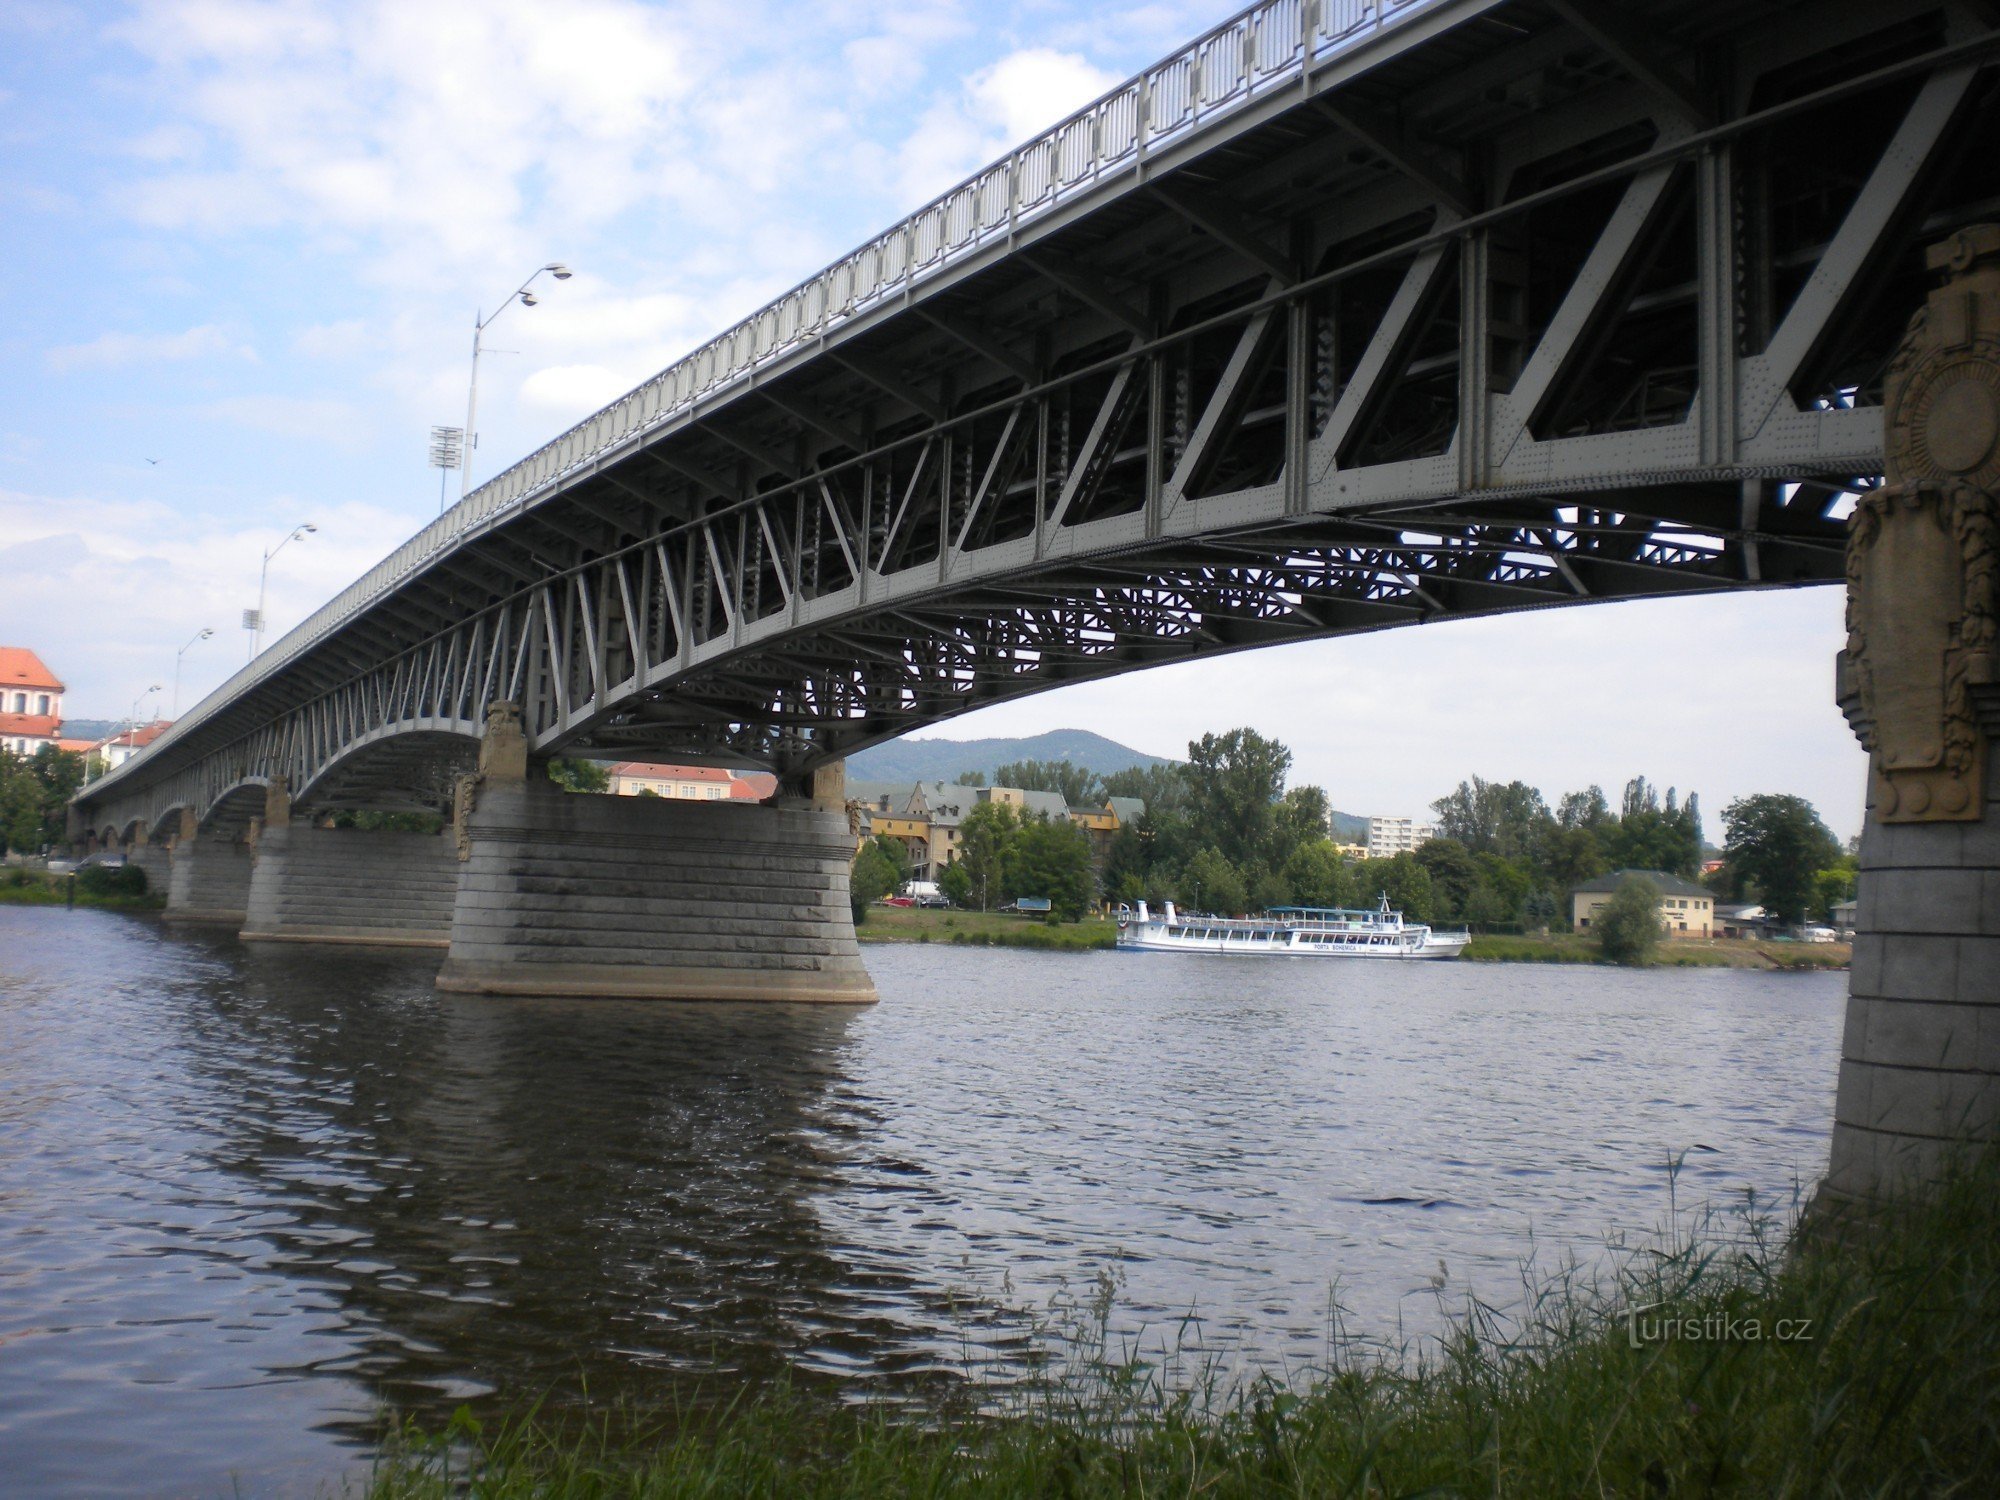 Tyrš-brug vanaf de linkeroever van de Elbe.